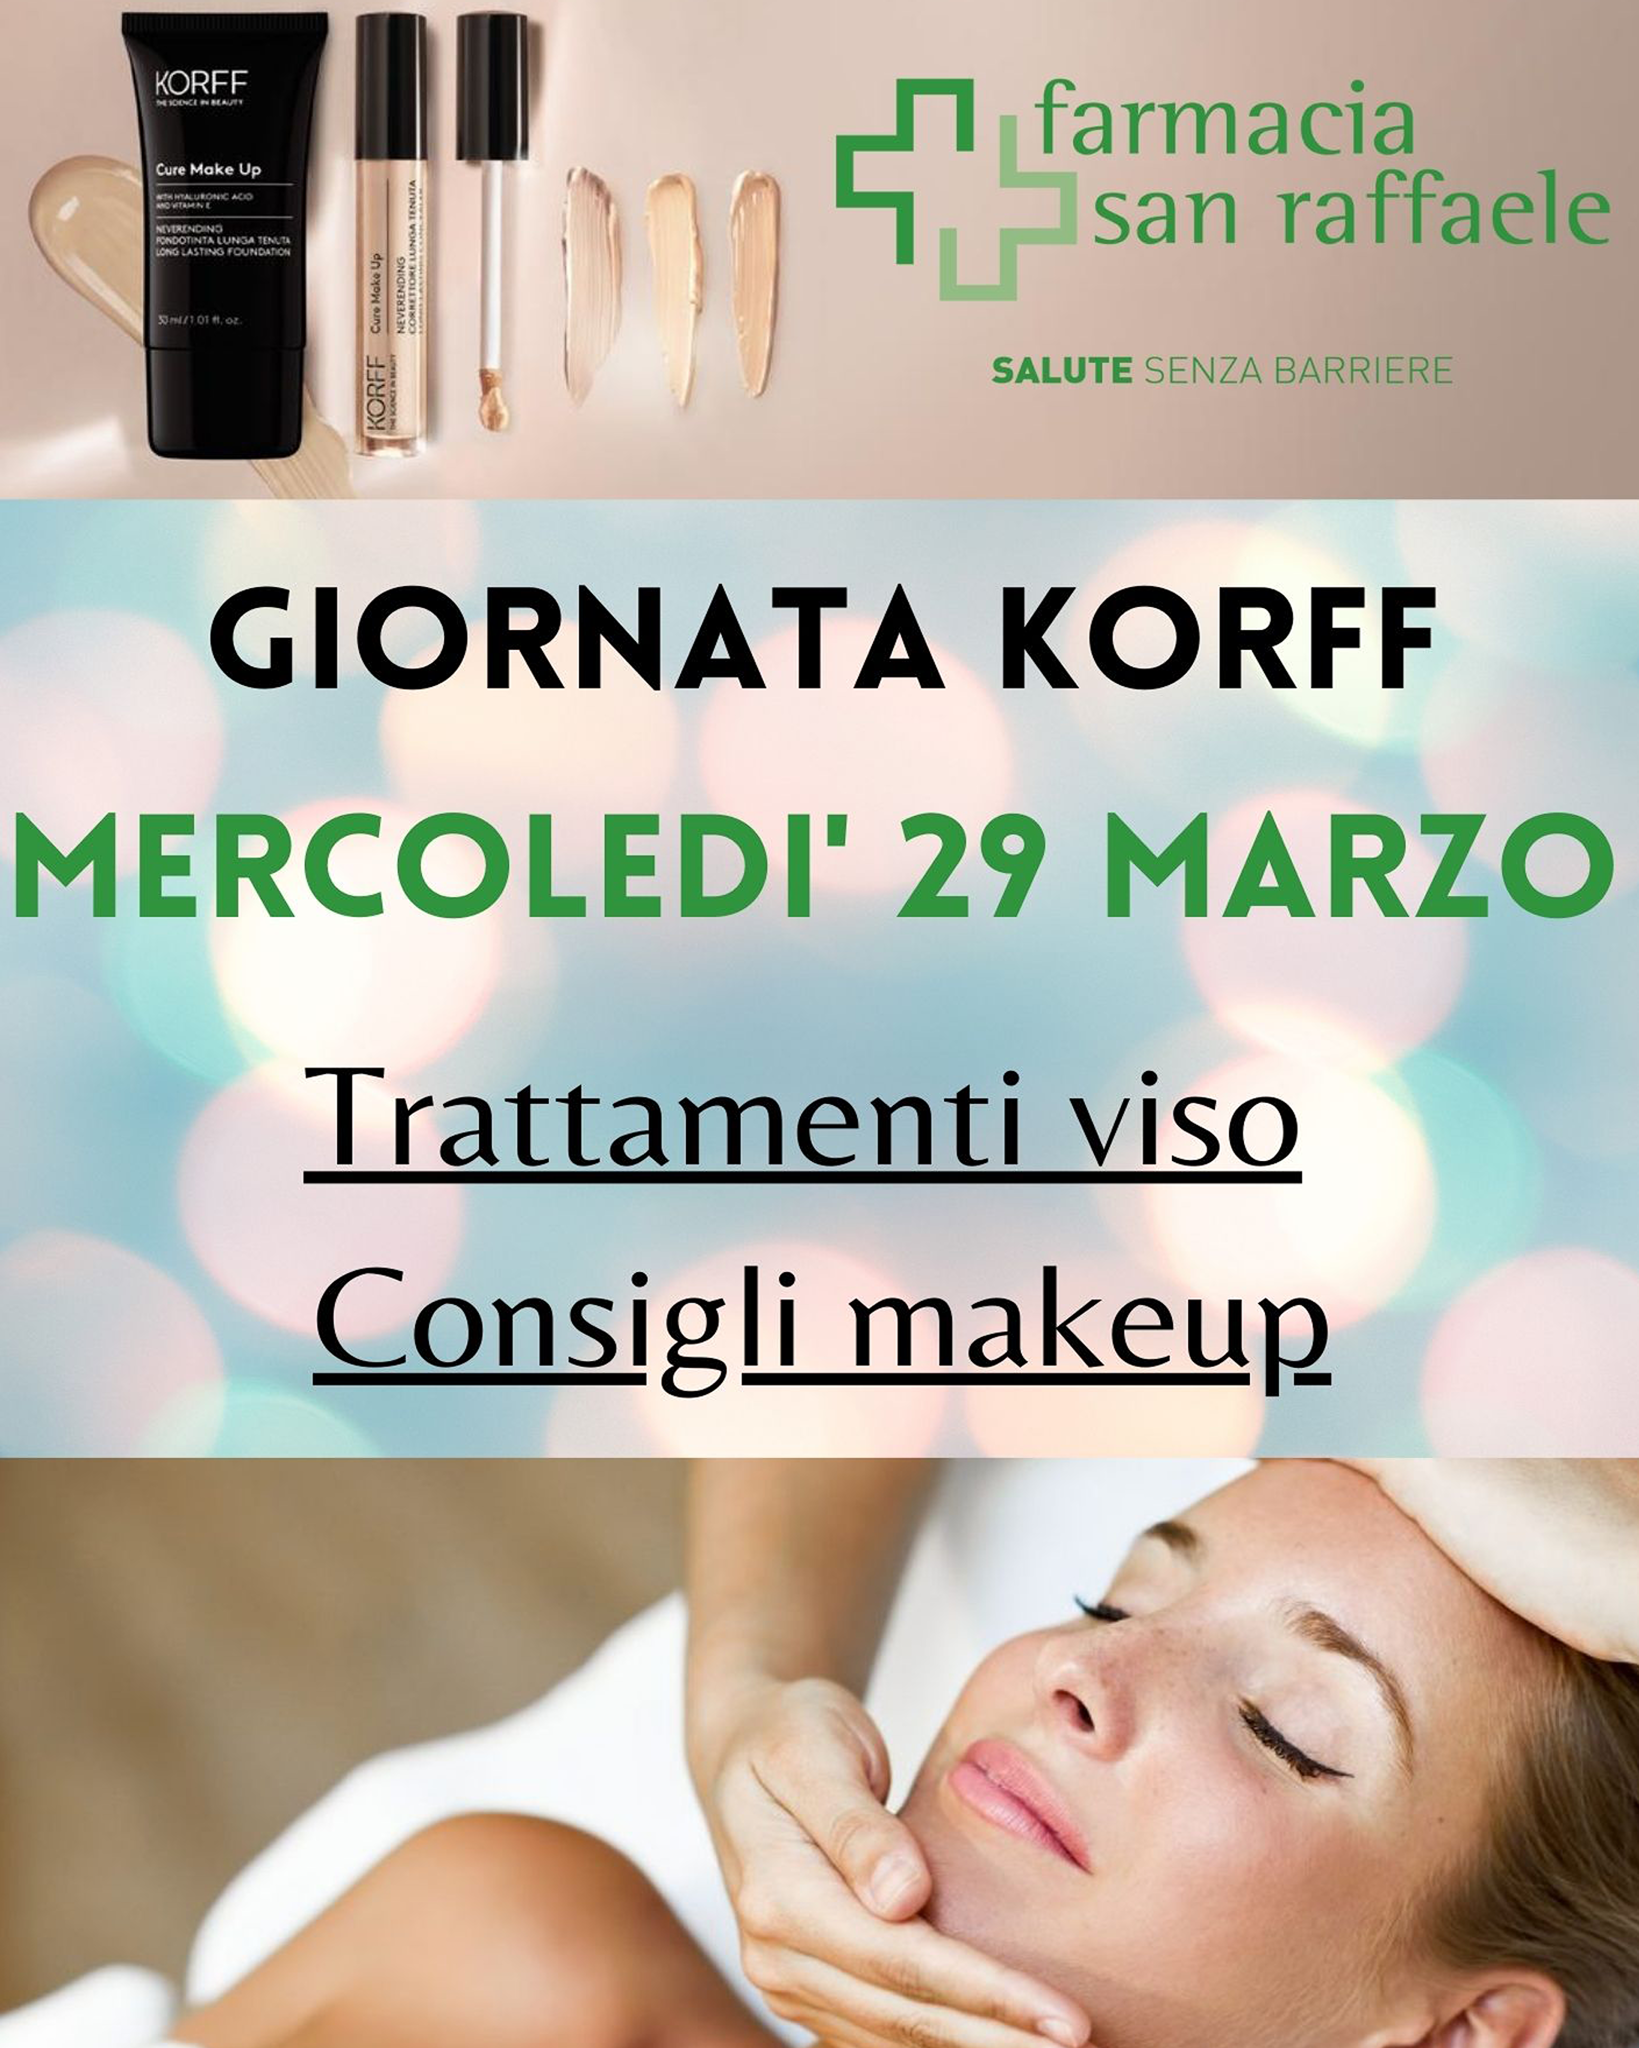 Giornata consigli make-up e trattamenti viso Korff